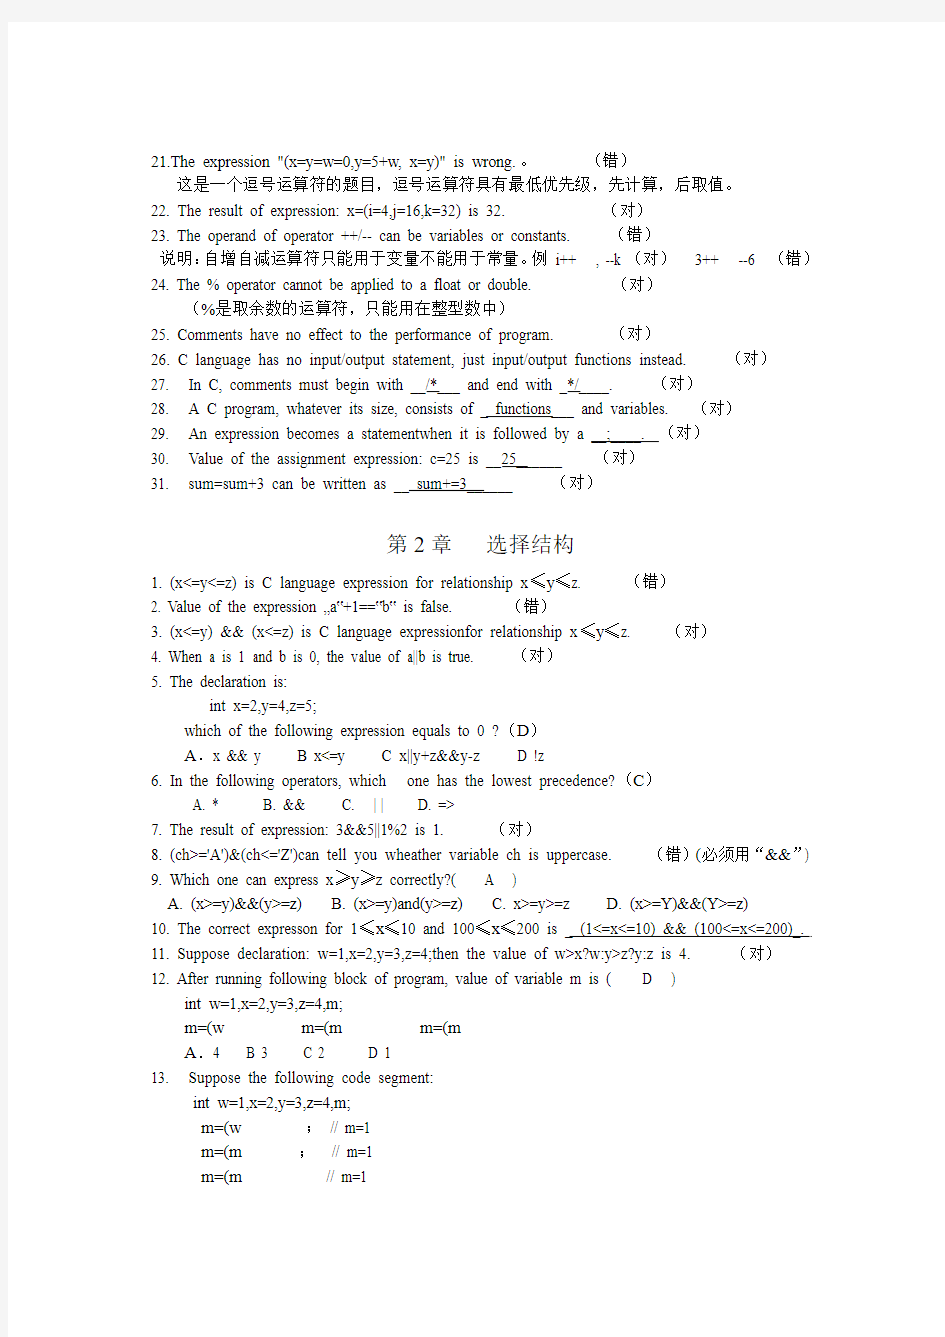 双语C期末复习资料(2013级)